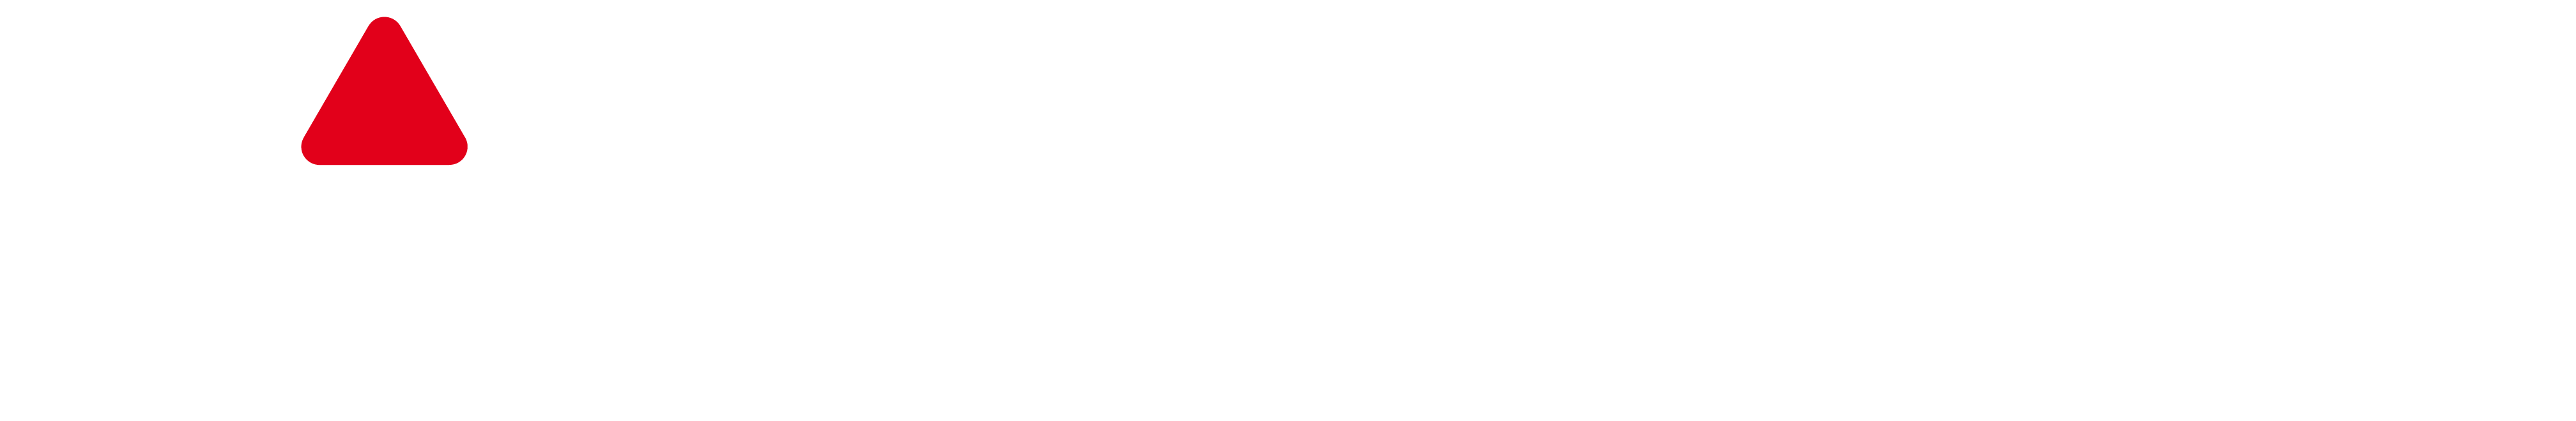 FlashScore.de logo